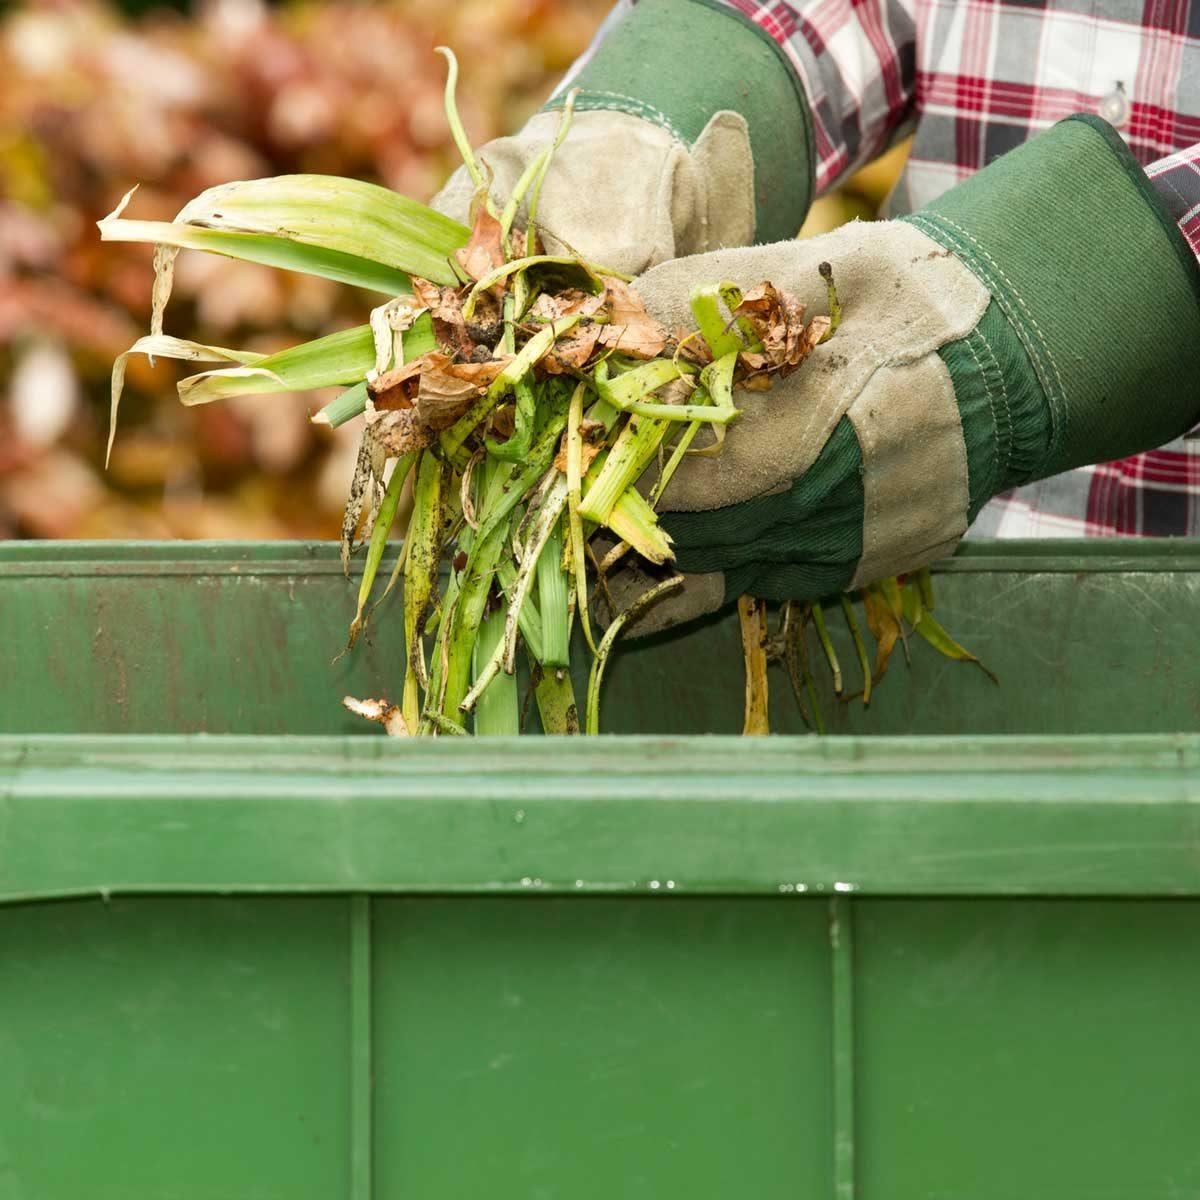 Optional Methods for Leaf Disposal